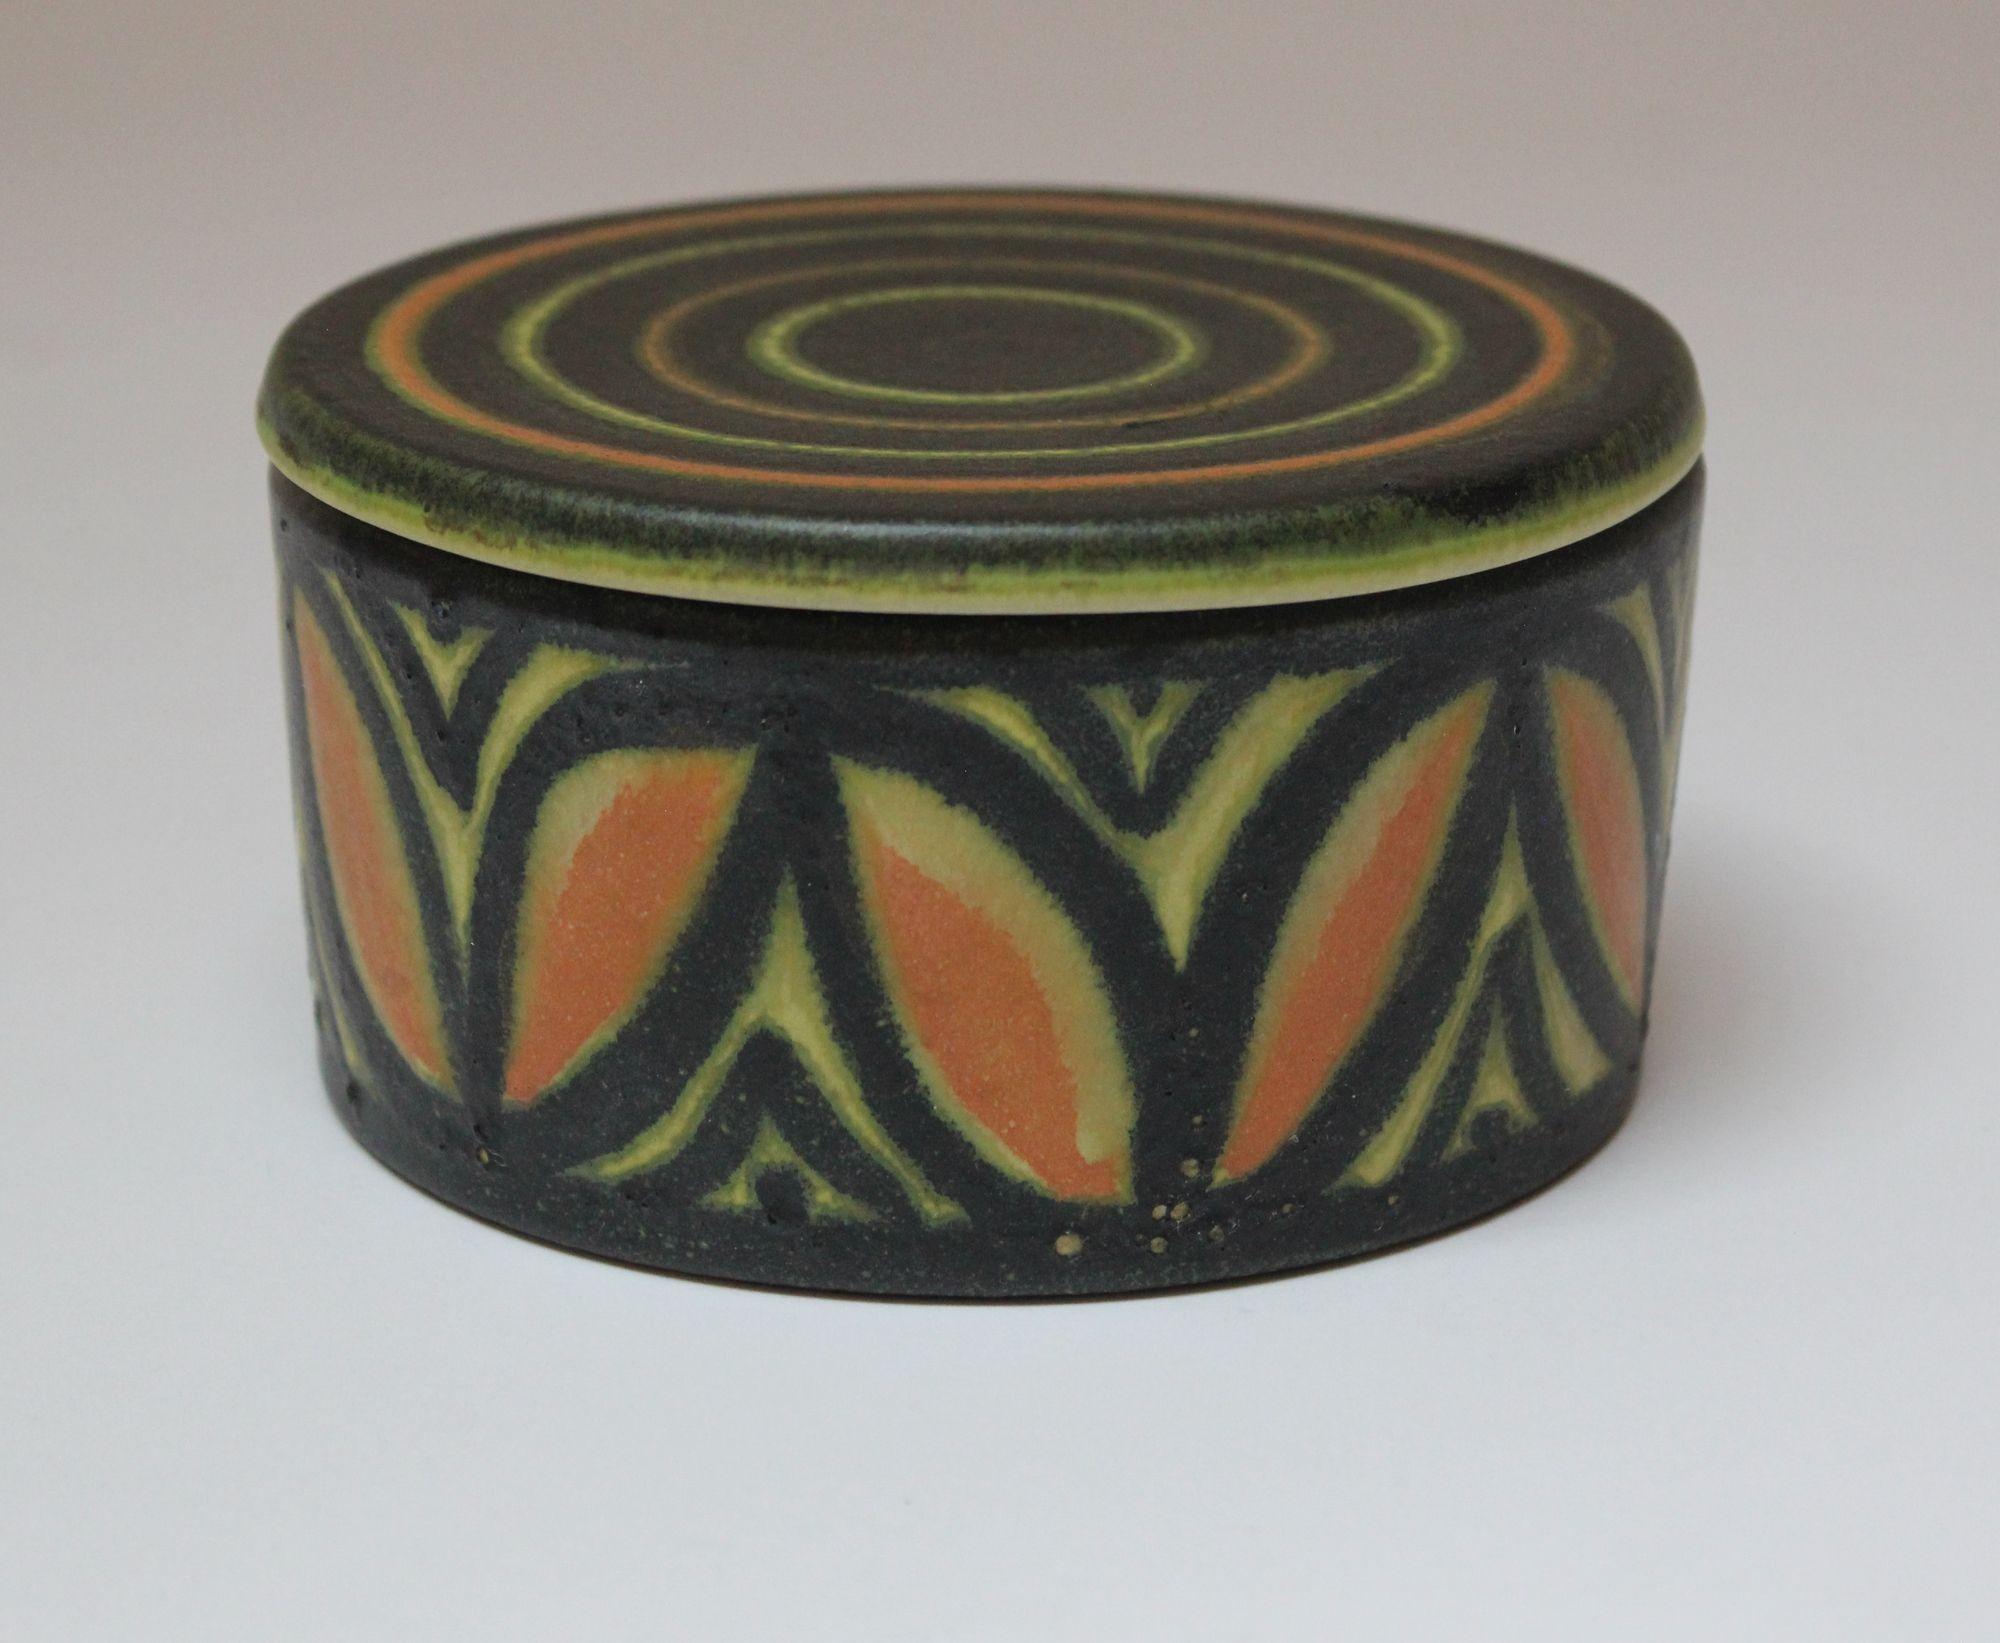 Boîte ronde / pot à couvercle en céramique avec motif de cercles concentriques et de pétales par Raymor (vers les années 1960, Italie).
Palette et design attrayants en excellent état.
Non signée.
H : 2.63